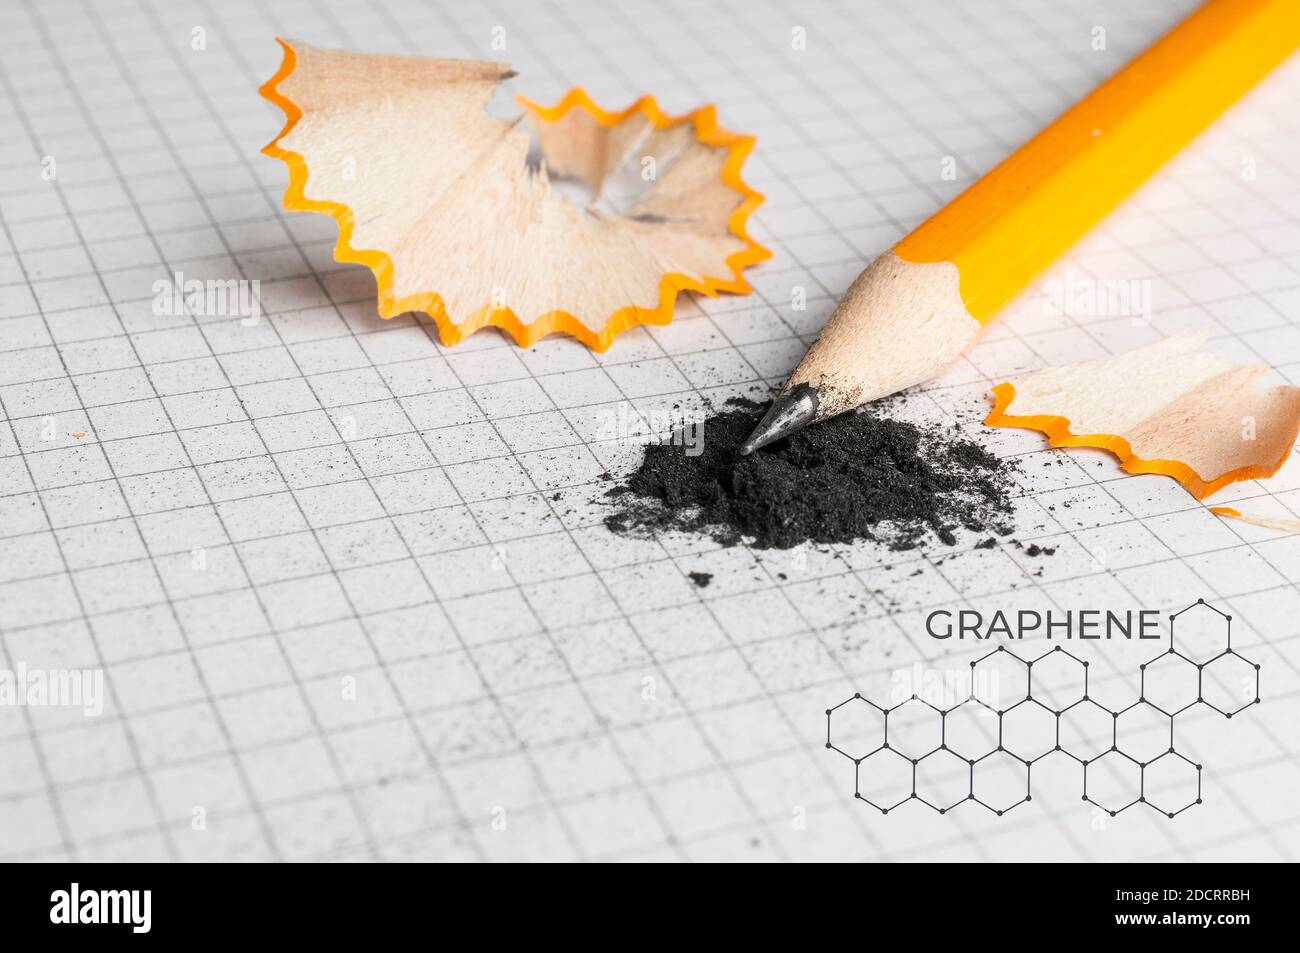 Bleistift auf einem Stapel von Graphit und molekulare Struktur von Graphen Stockfoto